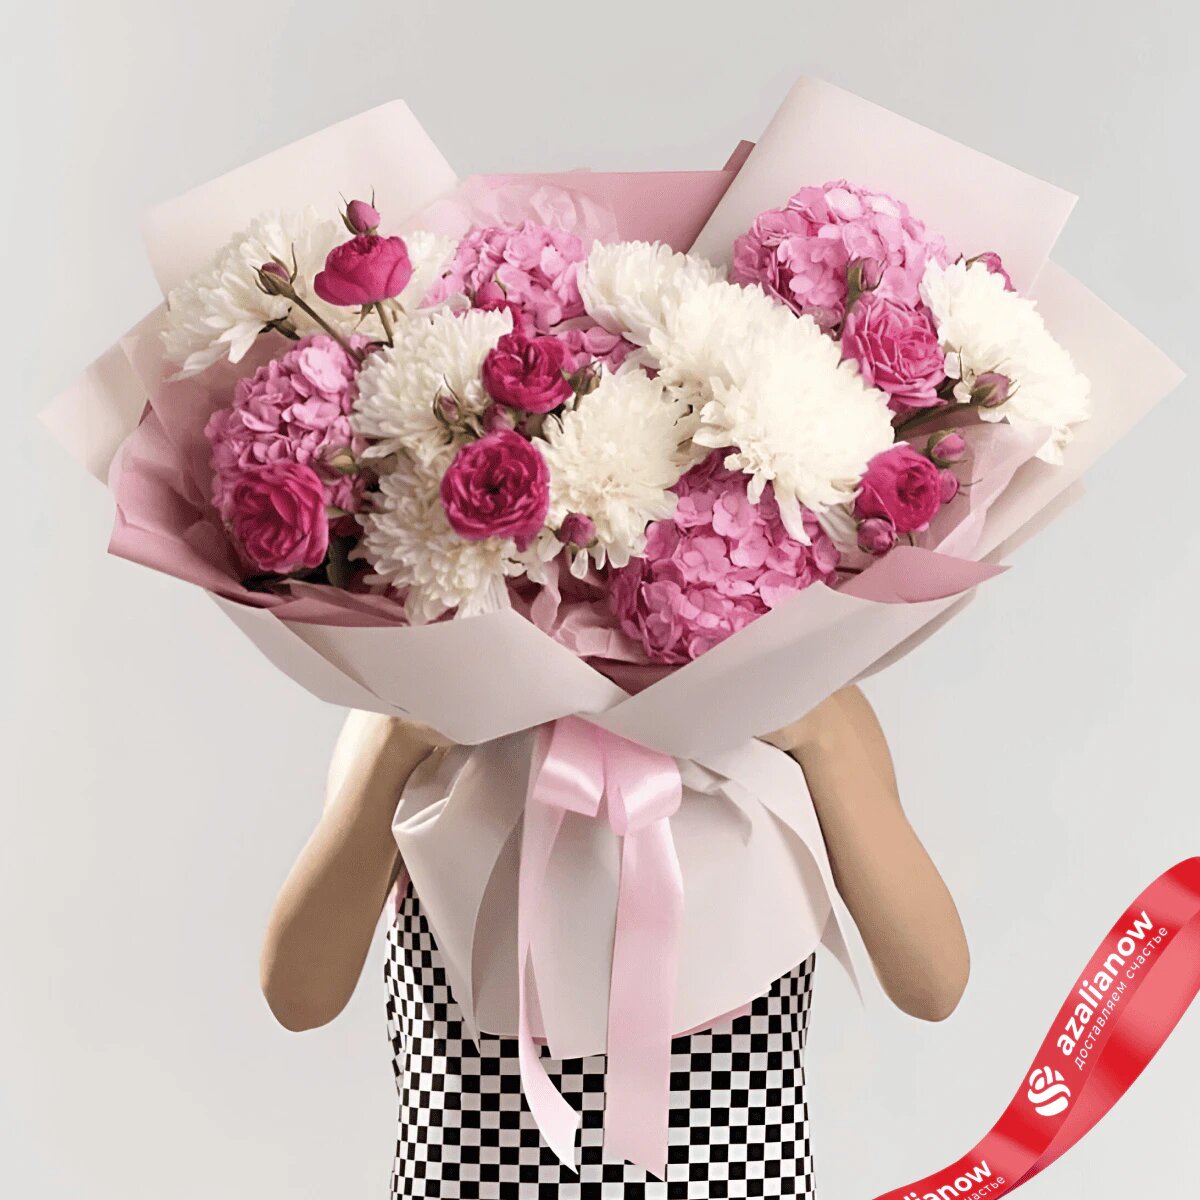   Букет из белых хризантем, розовых роз и гортензий «Ты беспощадна» от AzaliaNow